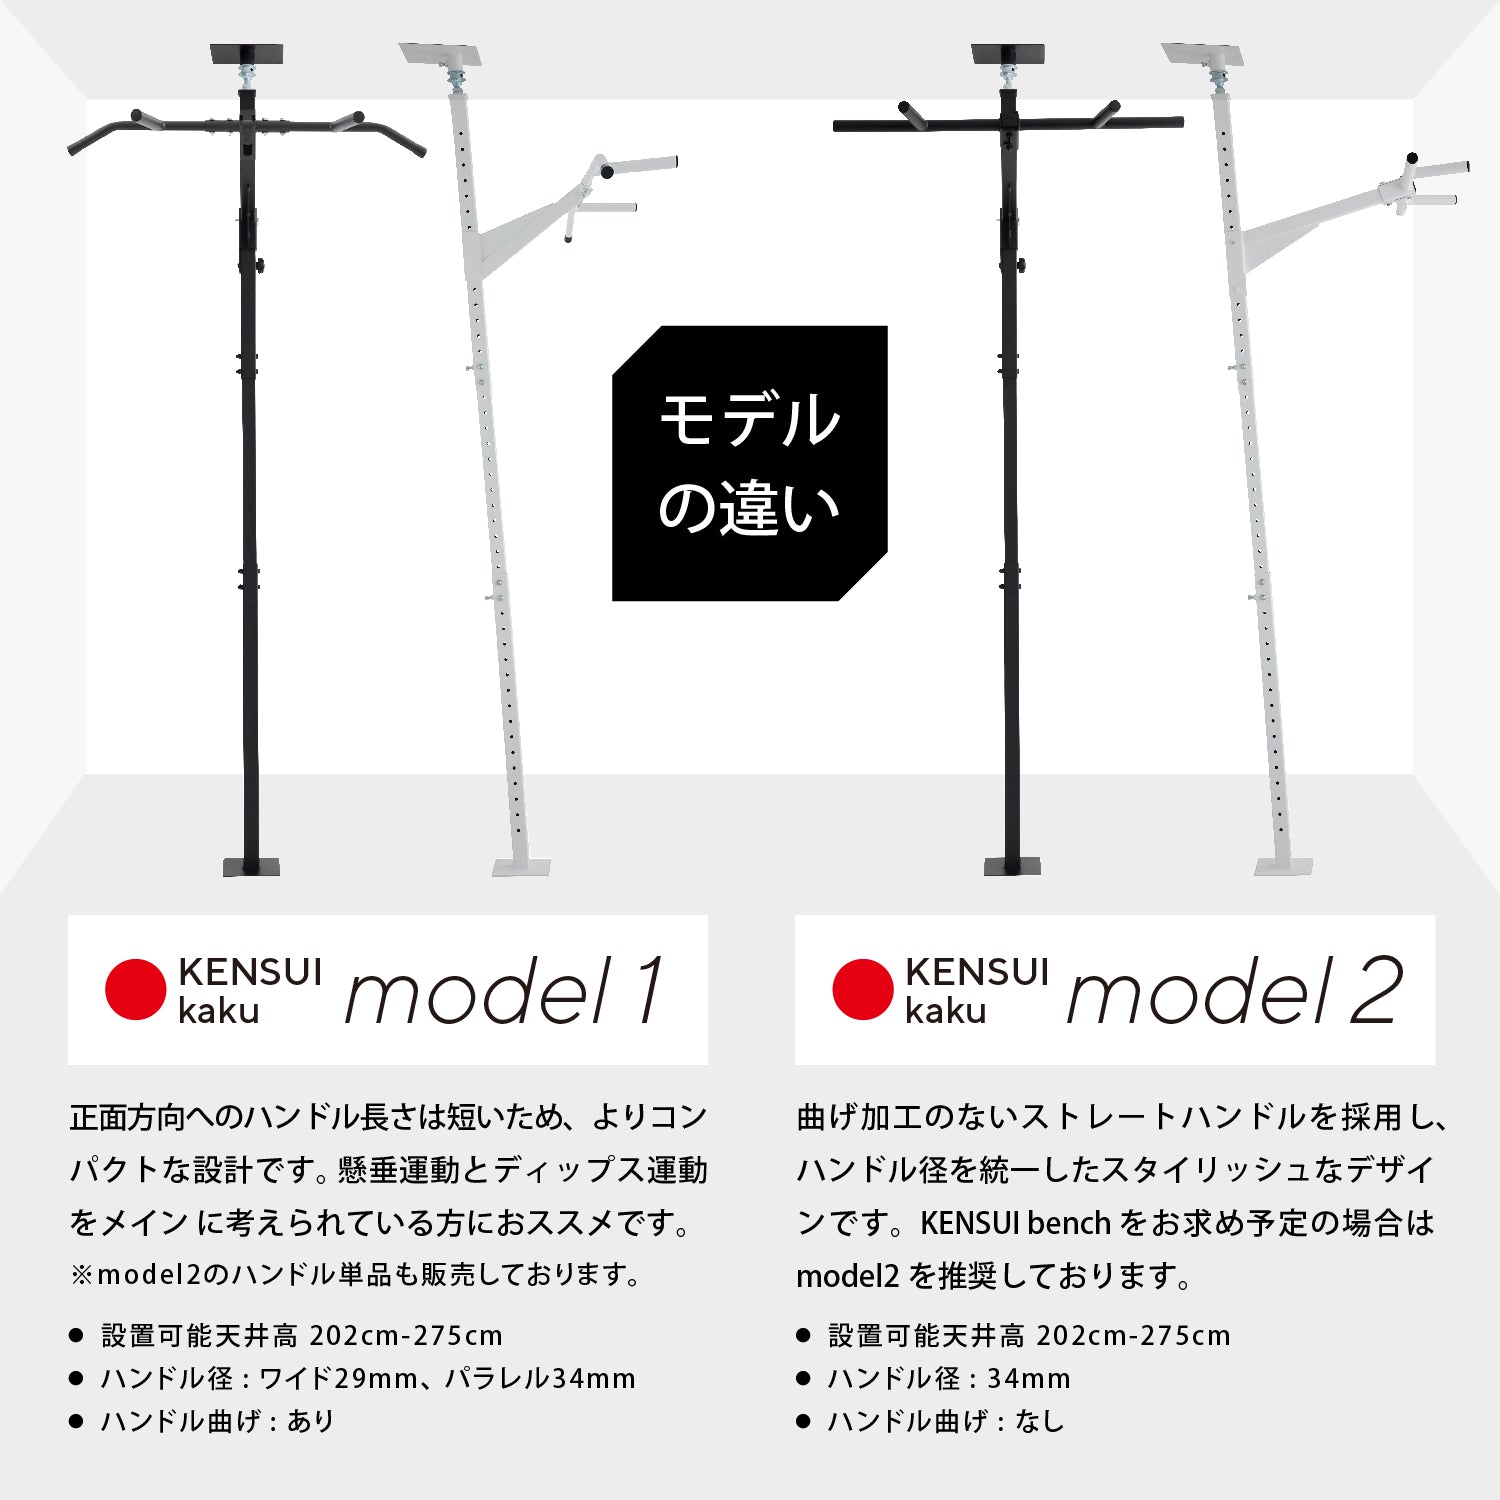 KENSUI kaku model1 ディップスバー ロールハンドル付トレーニング・エクササイズ